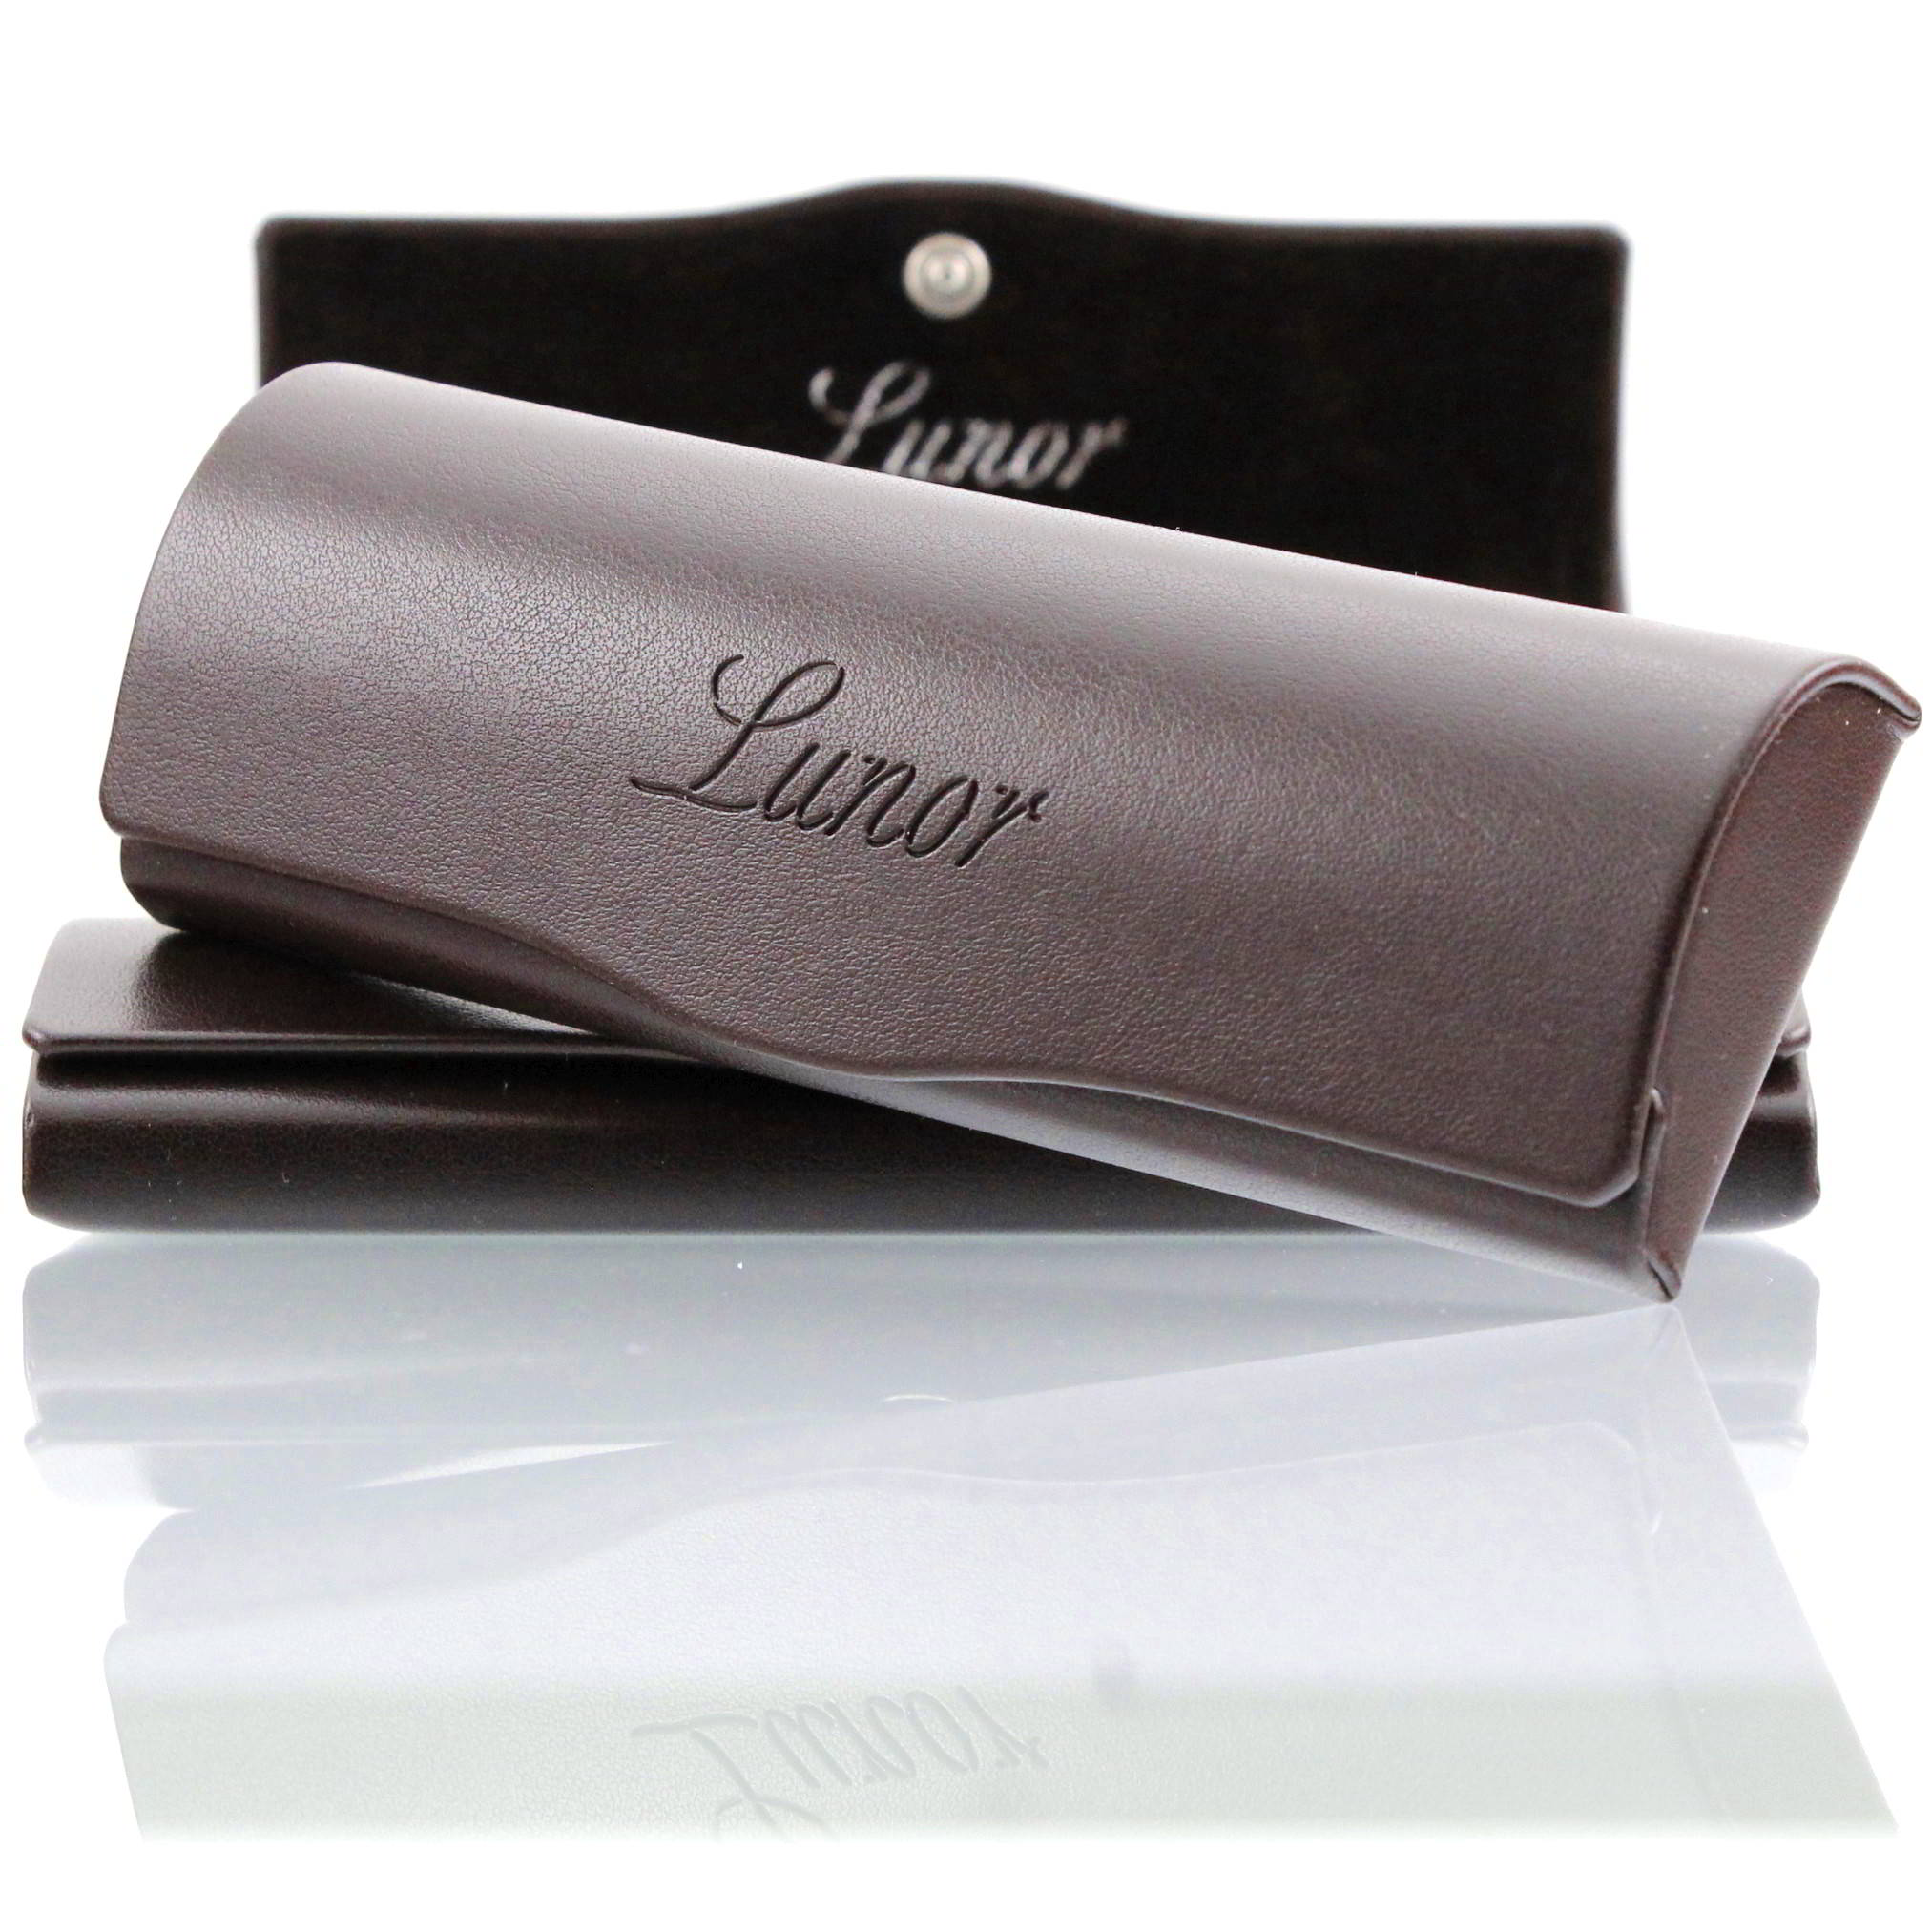 Lunor • Klapp- Brillen- Etui • Leder • dunkelbraun • Größe ca.140mm x 50mm  x 20mm